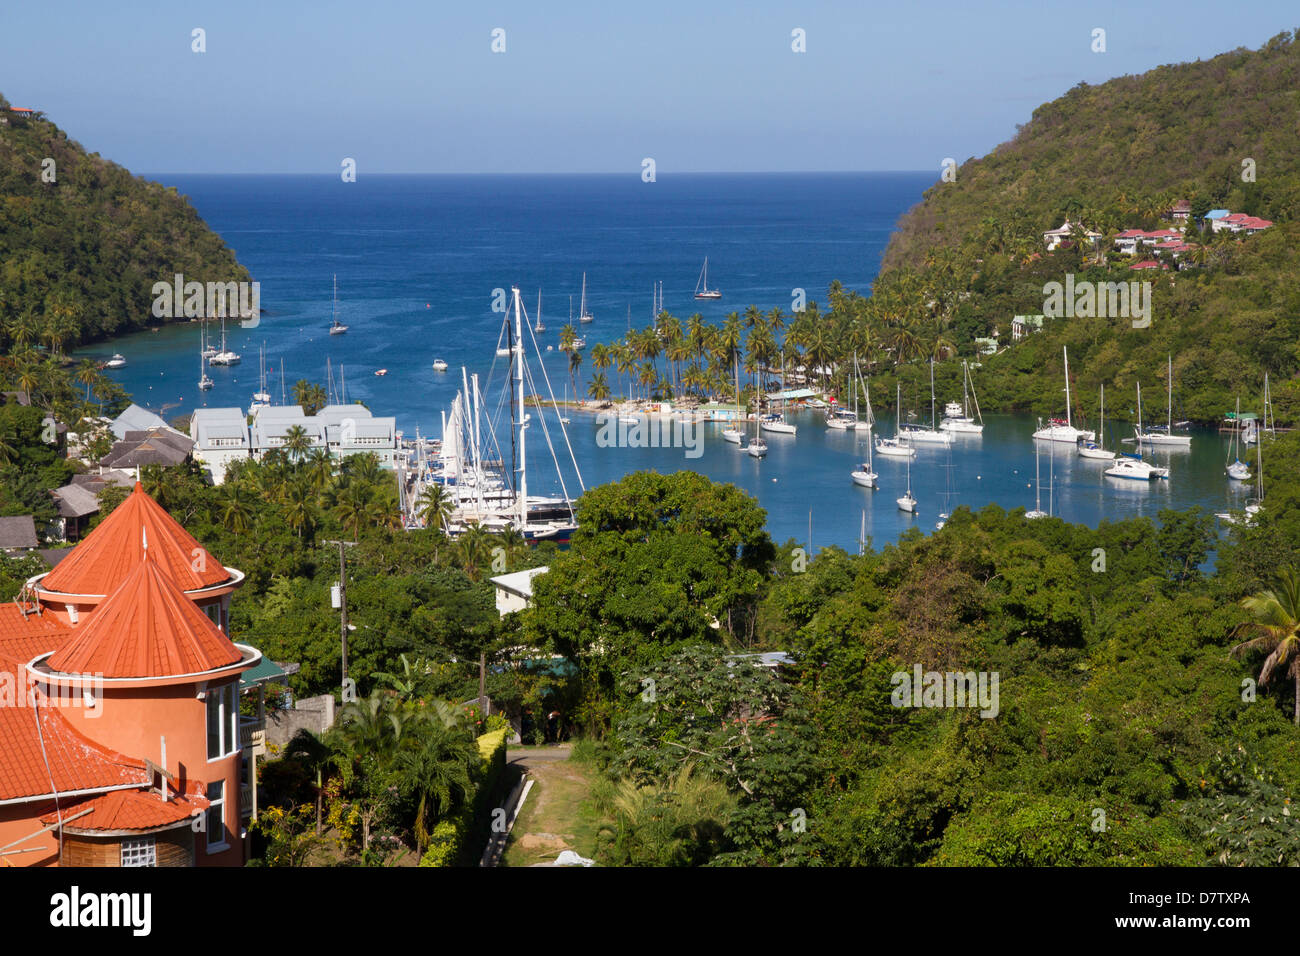 La baie de Marigot et des yachts, Sainte-Lucie, îles du Vent, Antilles, Caraïbes Banque D'Images